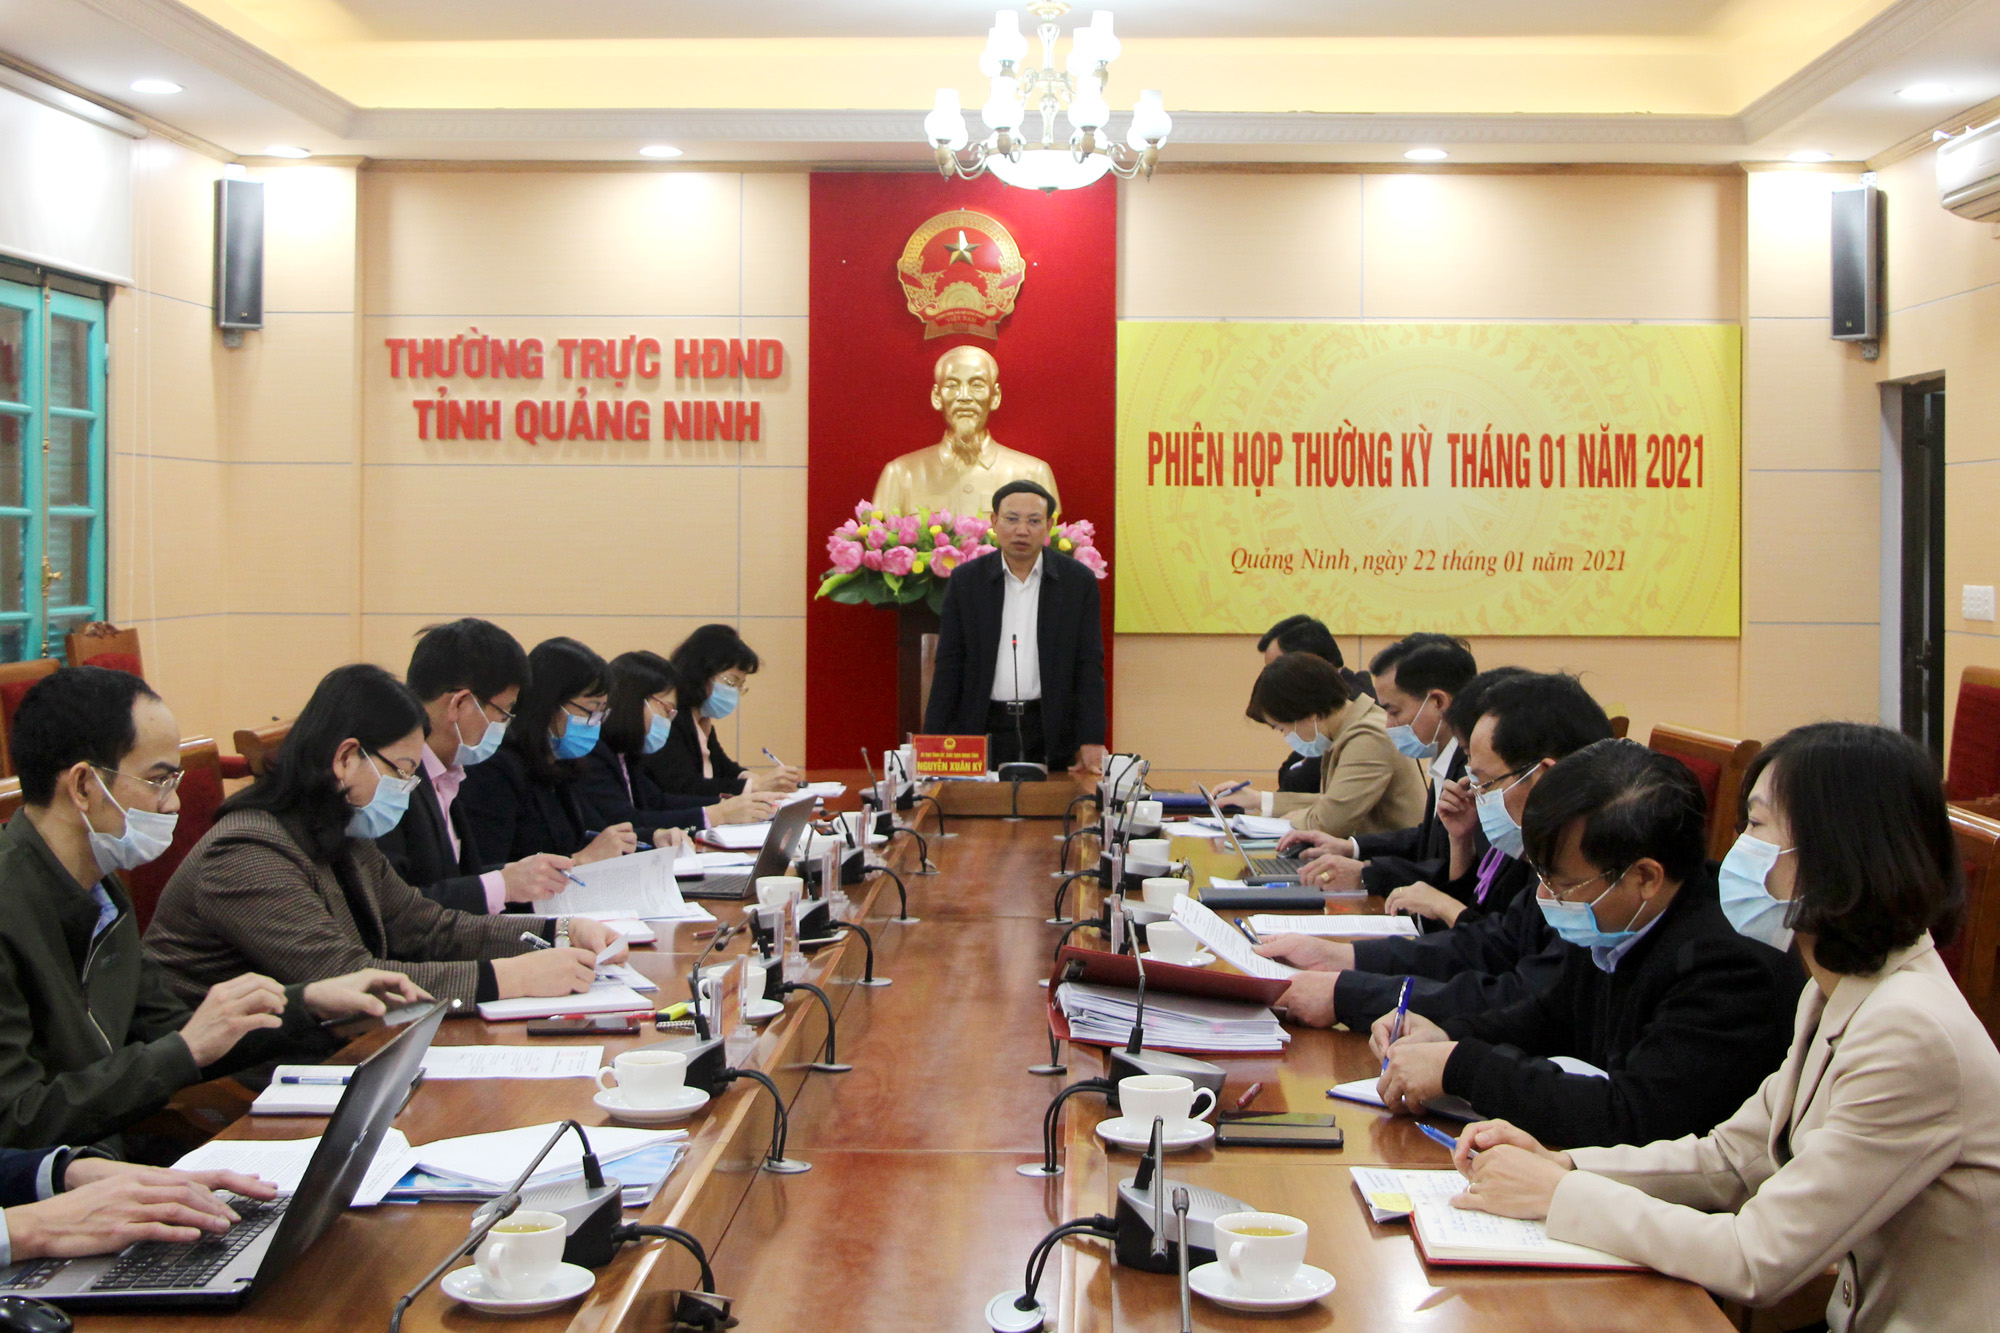 Đồng chí Nguyễn Xuân Ký, Bí thư Tỉnh ủy, Chủ tịch HĐND tỉnh, kết luận phiên họp.